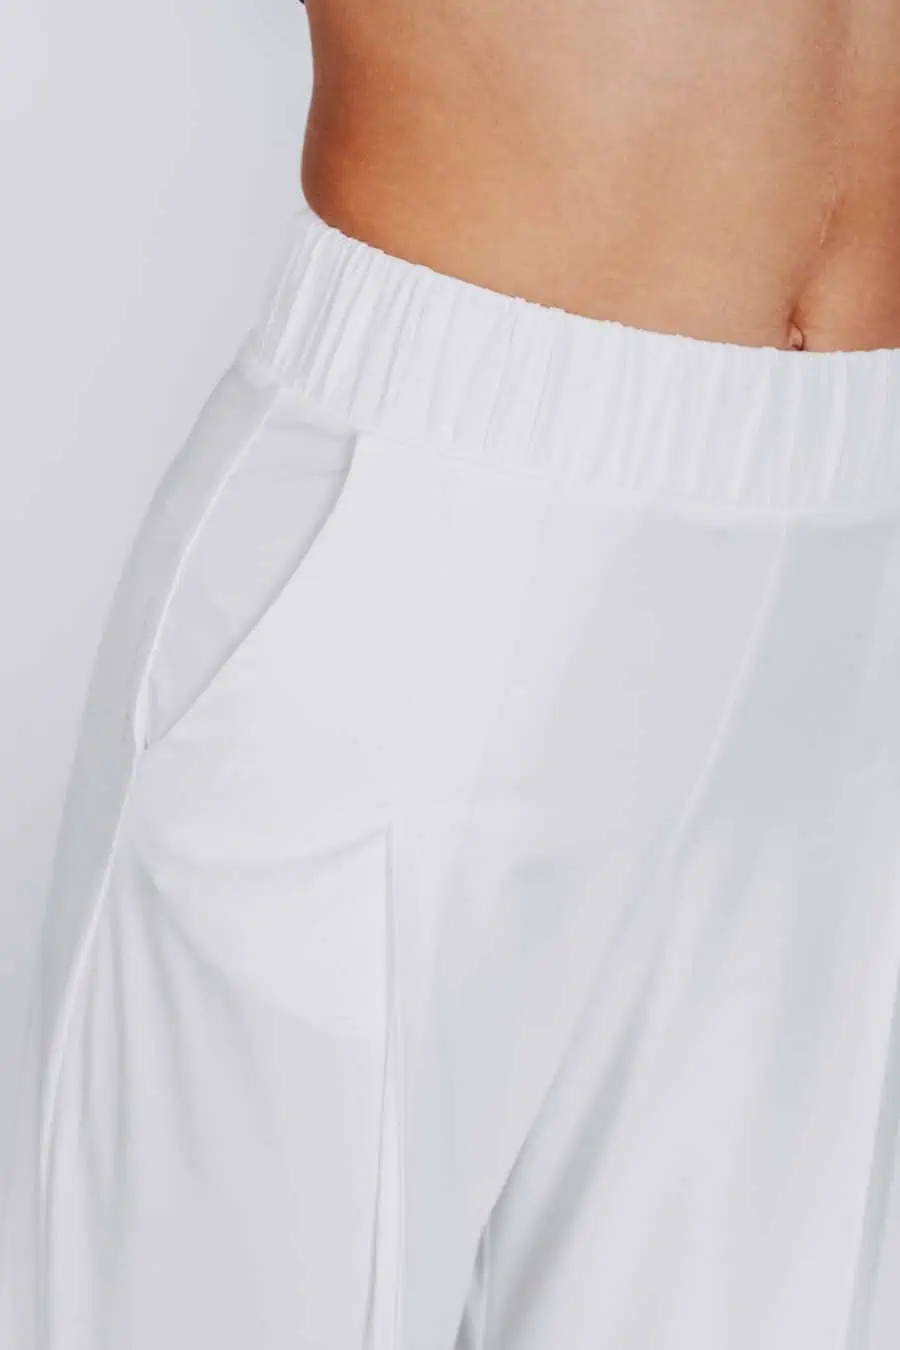 Deep White Black Modell ZOE weite Damen Hose weiß mit Bügelfalte, Damen Stoffhose aus Viscose mit elastischem Bund, Ansicht Detail elastischer Bund